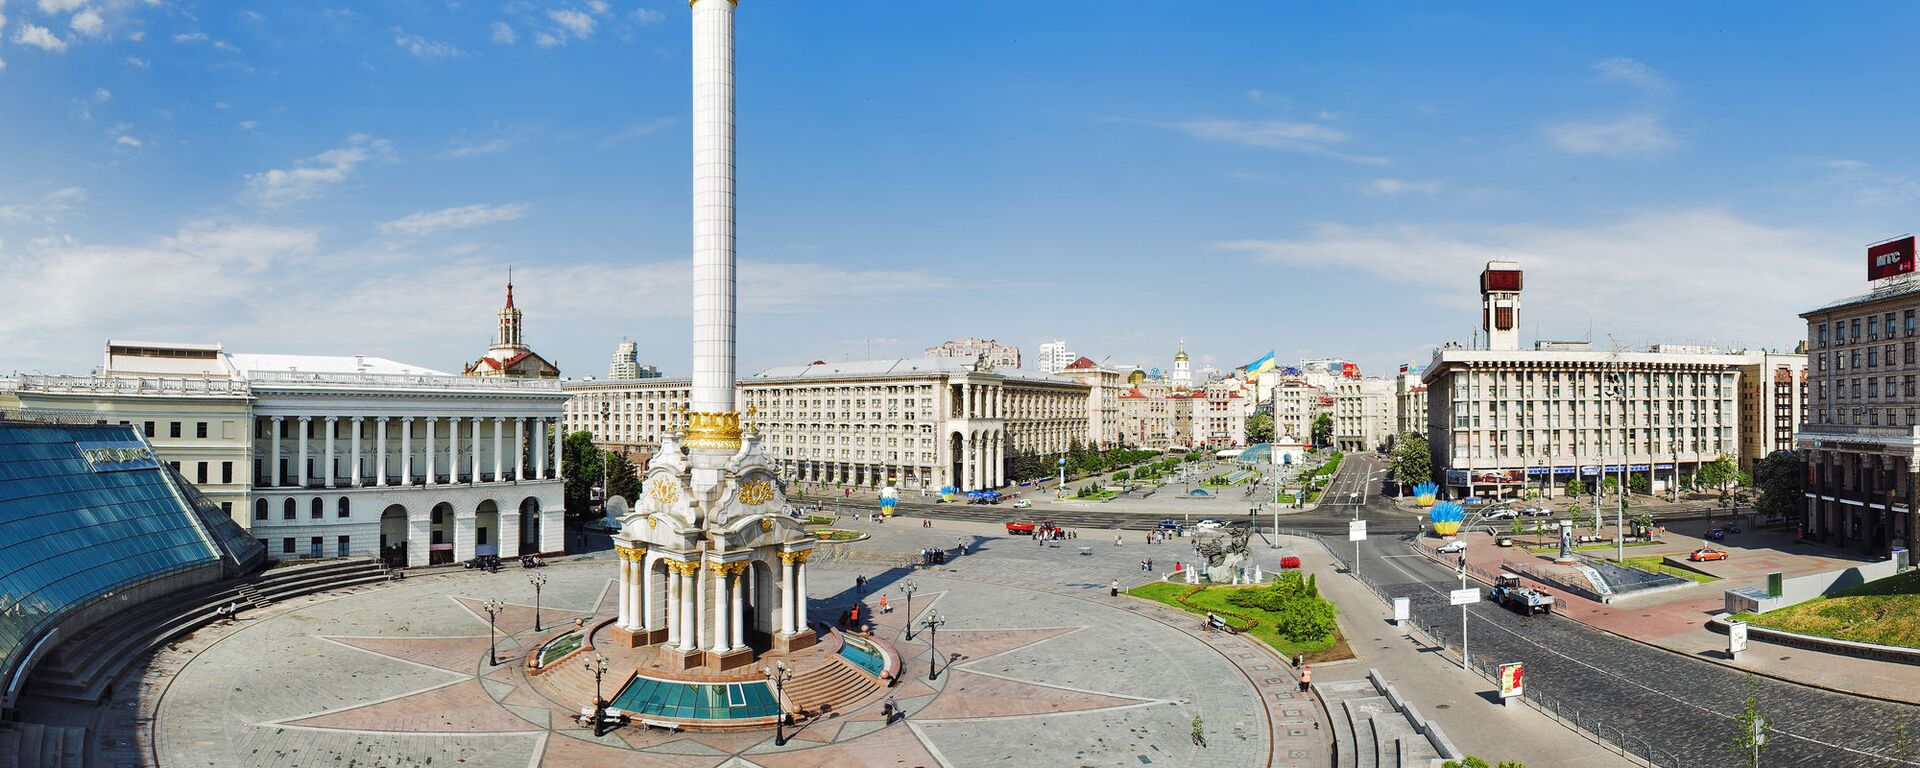 Площадь Независимости в Киеве, архивное фото - Sputnik Lietuva, 1920, 20.07.2021